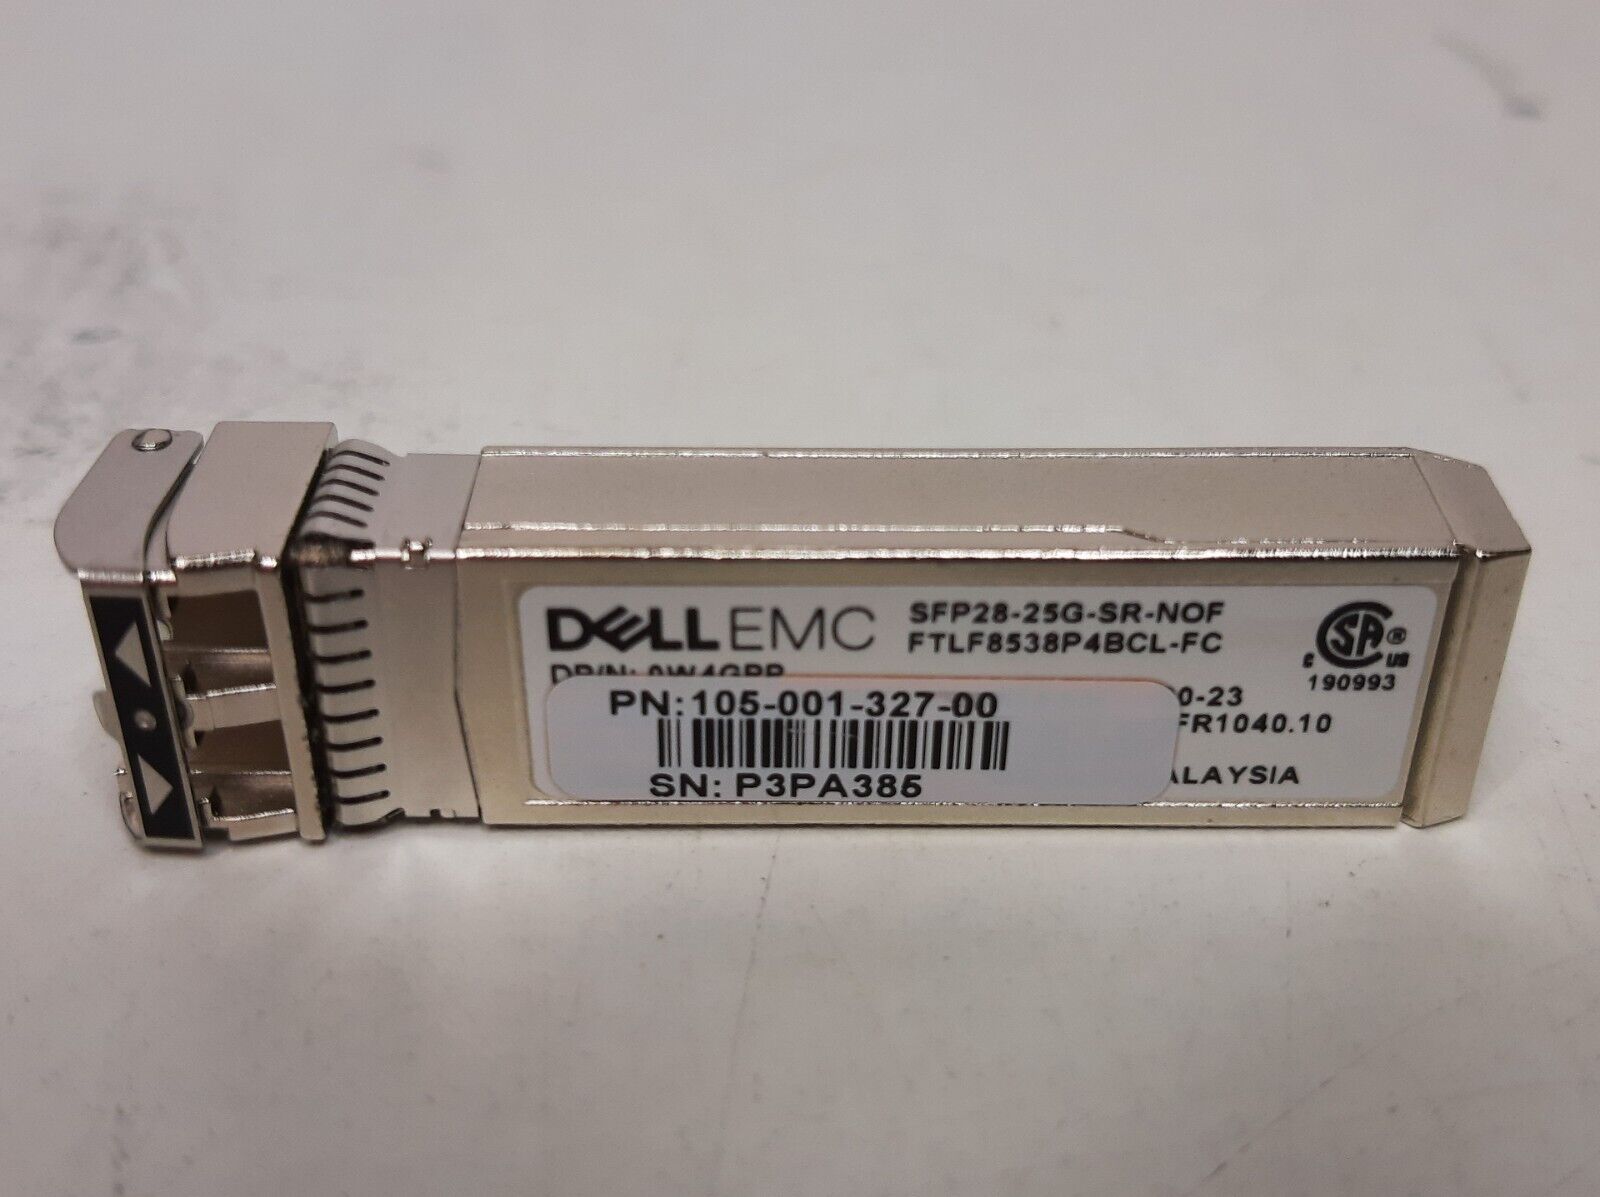 Dell EMC Networking 25G SFP28 Optical Transciever SFP28-25G-SR-NOF